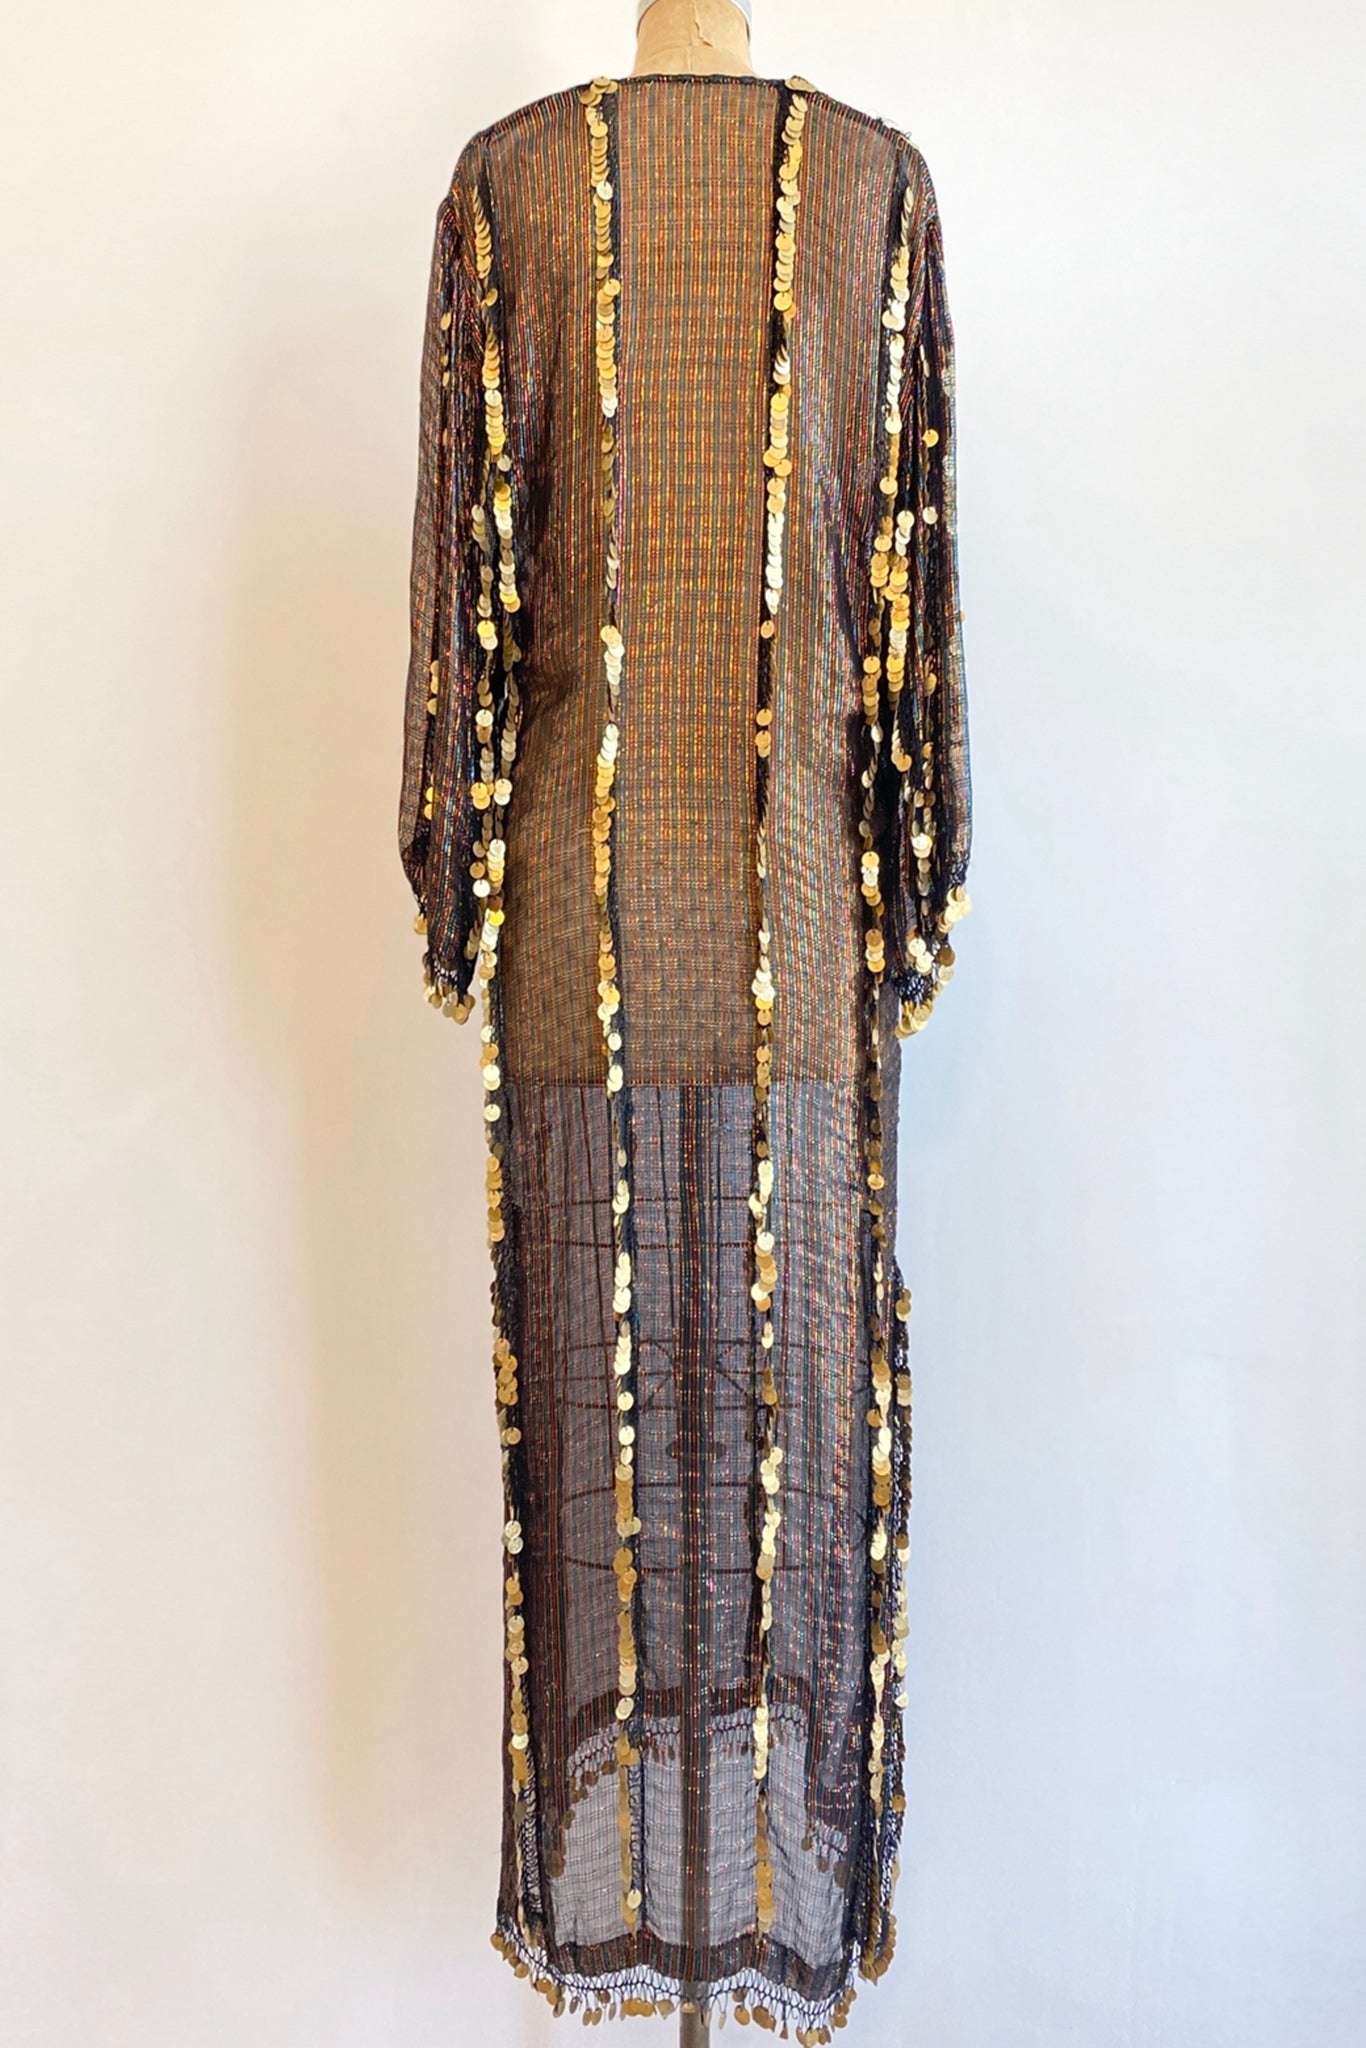 Vintage Sheer Metallic Coin Fringe Dress on Dressform Back at Recess Los Angeles